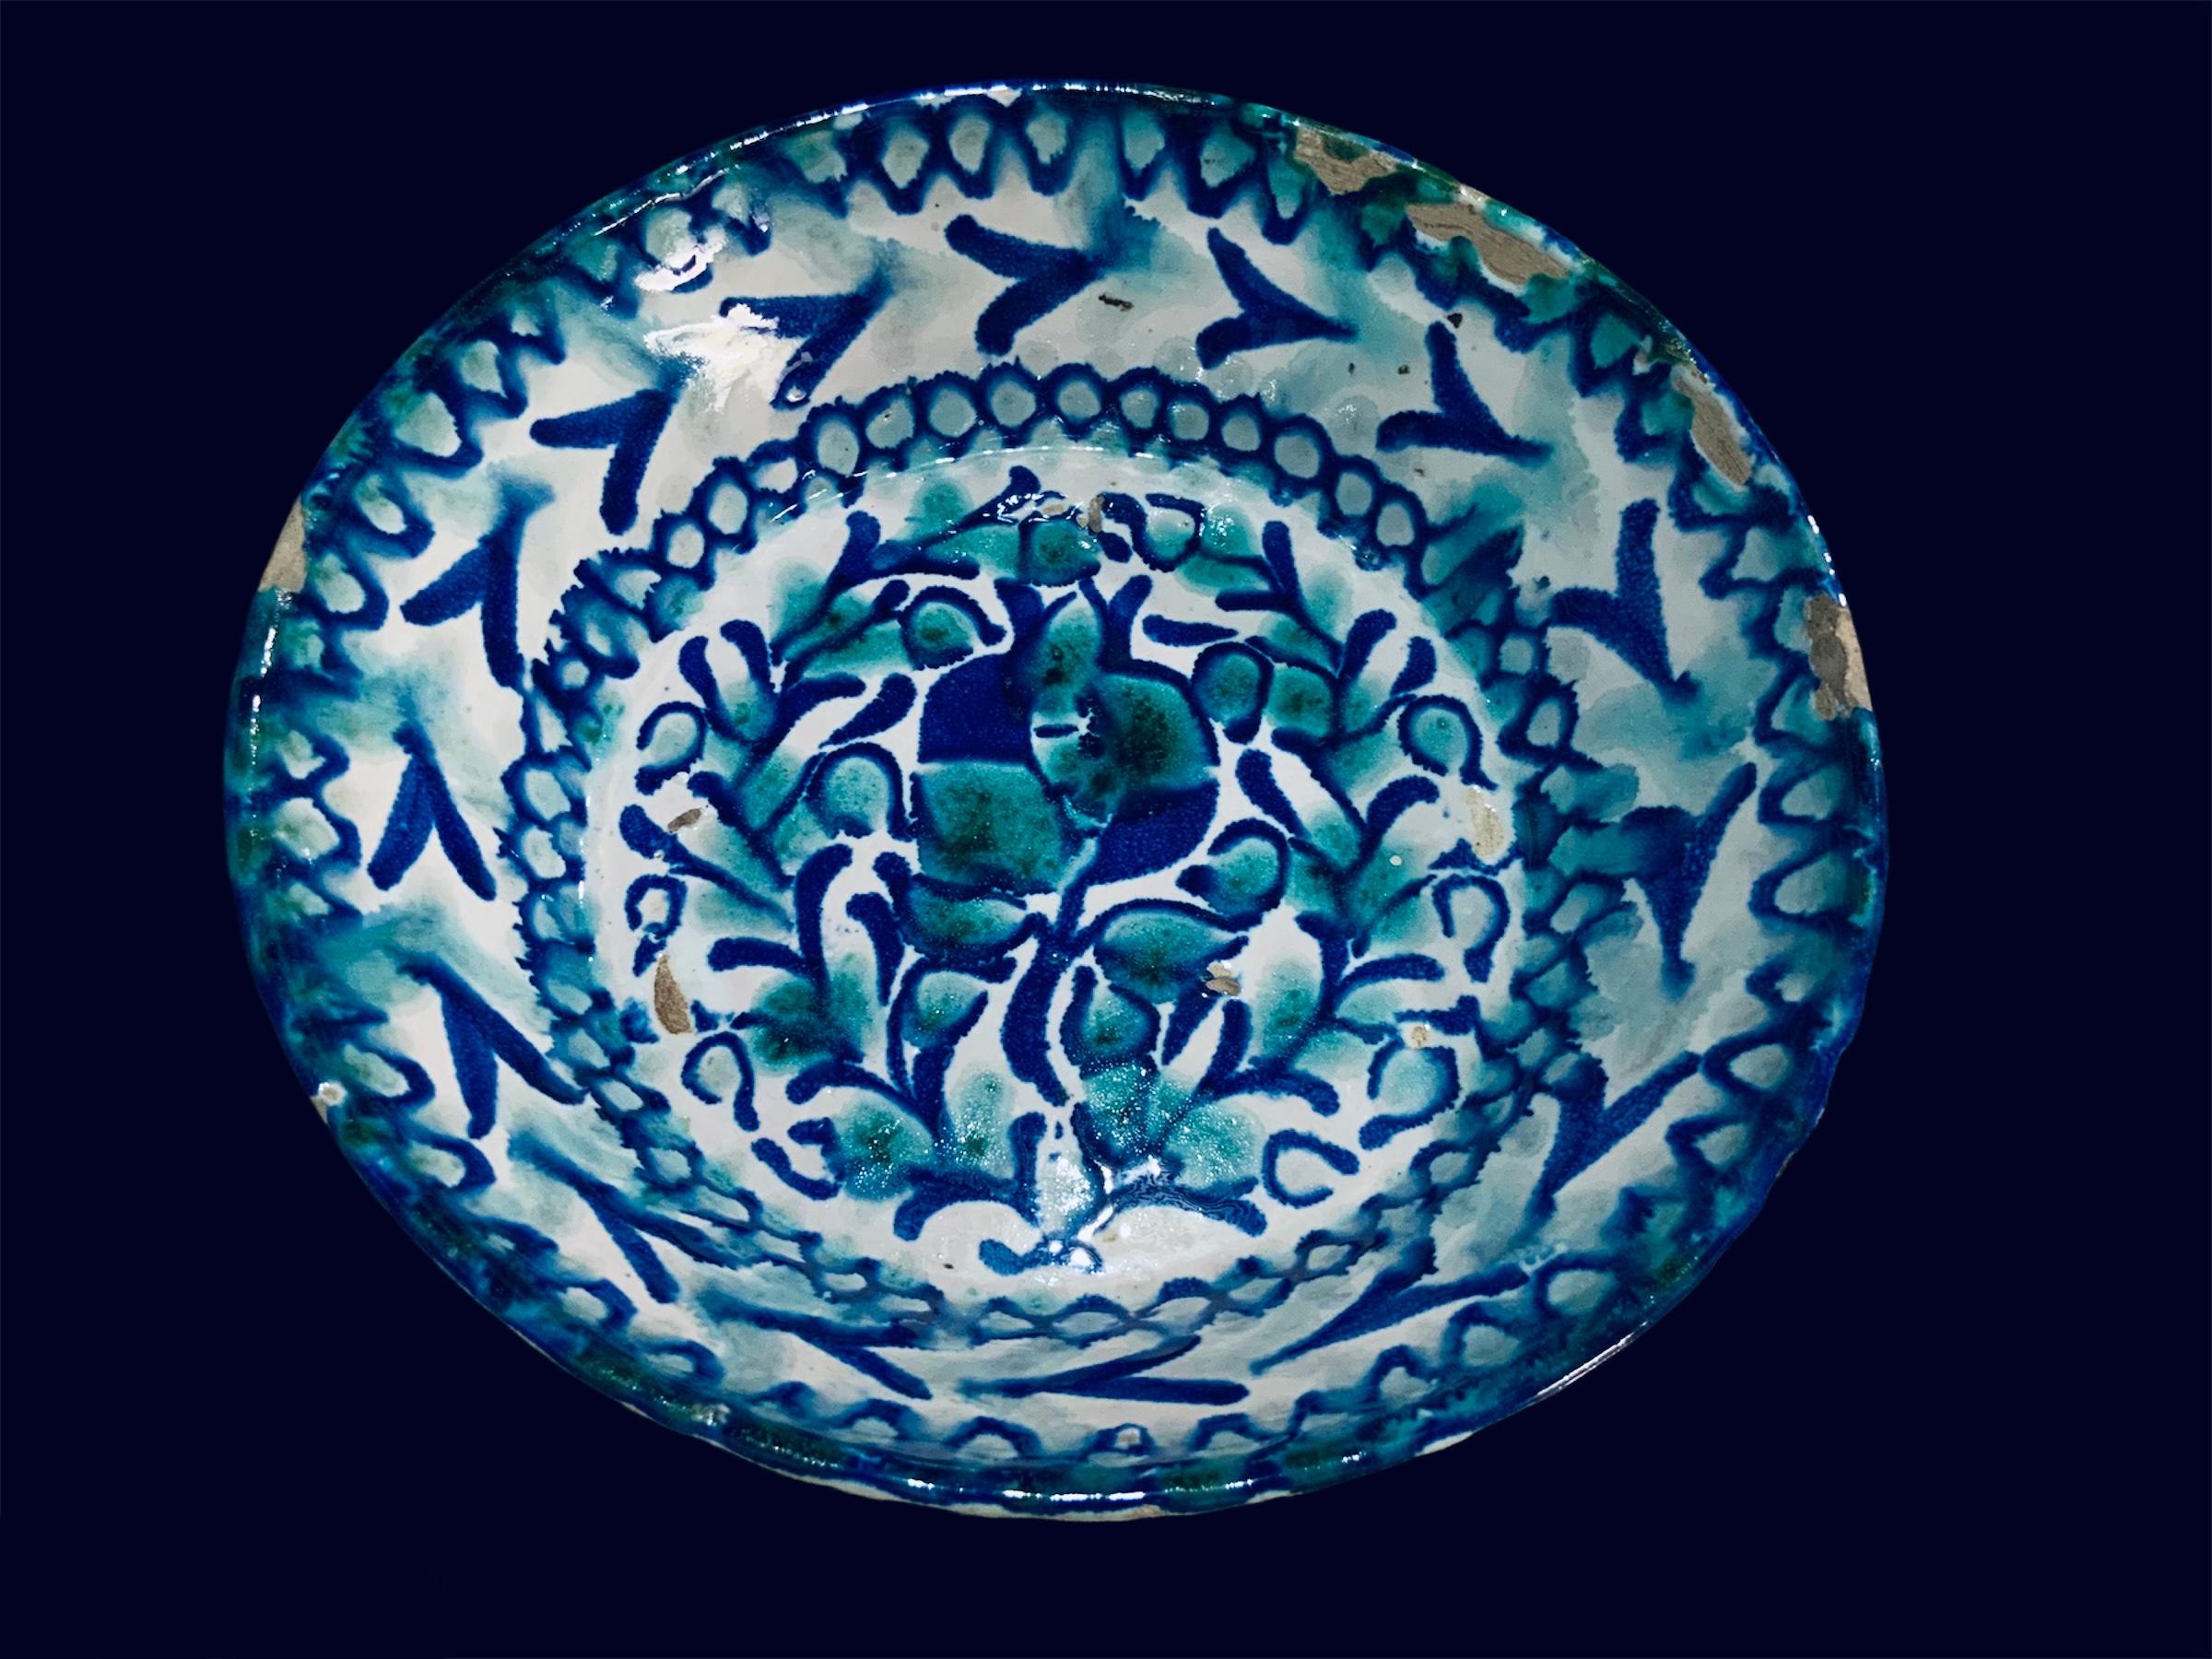 Il s'agit d'un bol en céramique de style Fajalauza d'Espagne. Il représente un bol rond peint à la main en bleu cobalt et vert avec une fleur de grenade et quelques branches au centre. Autour de ce centre, il y a une guirlande de cercles et